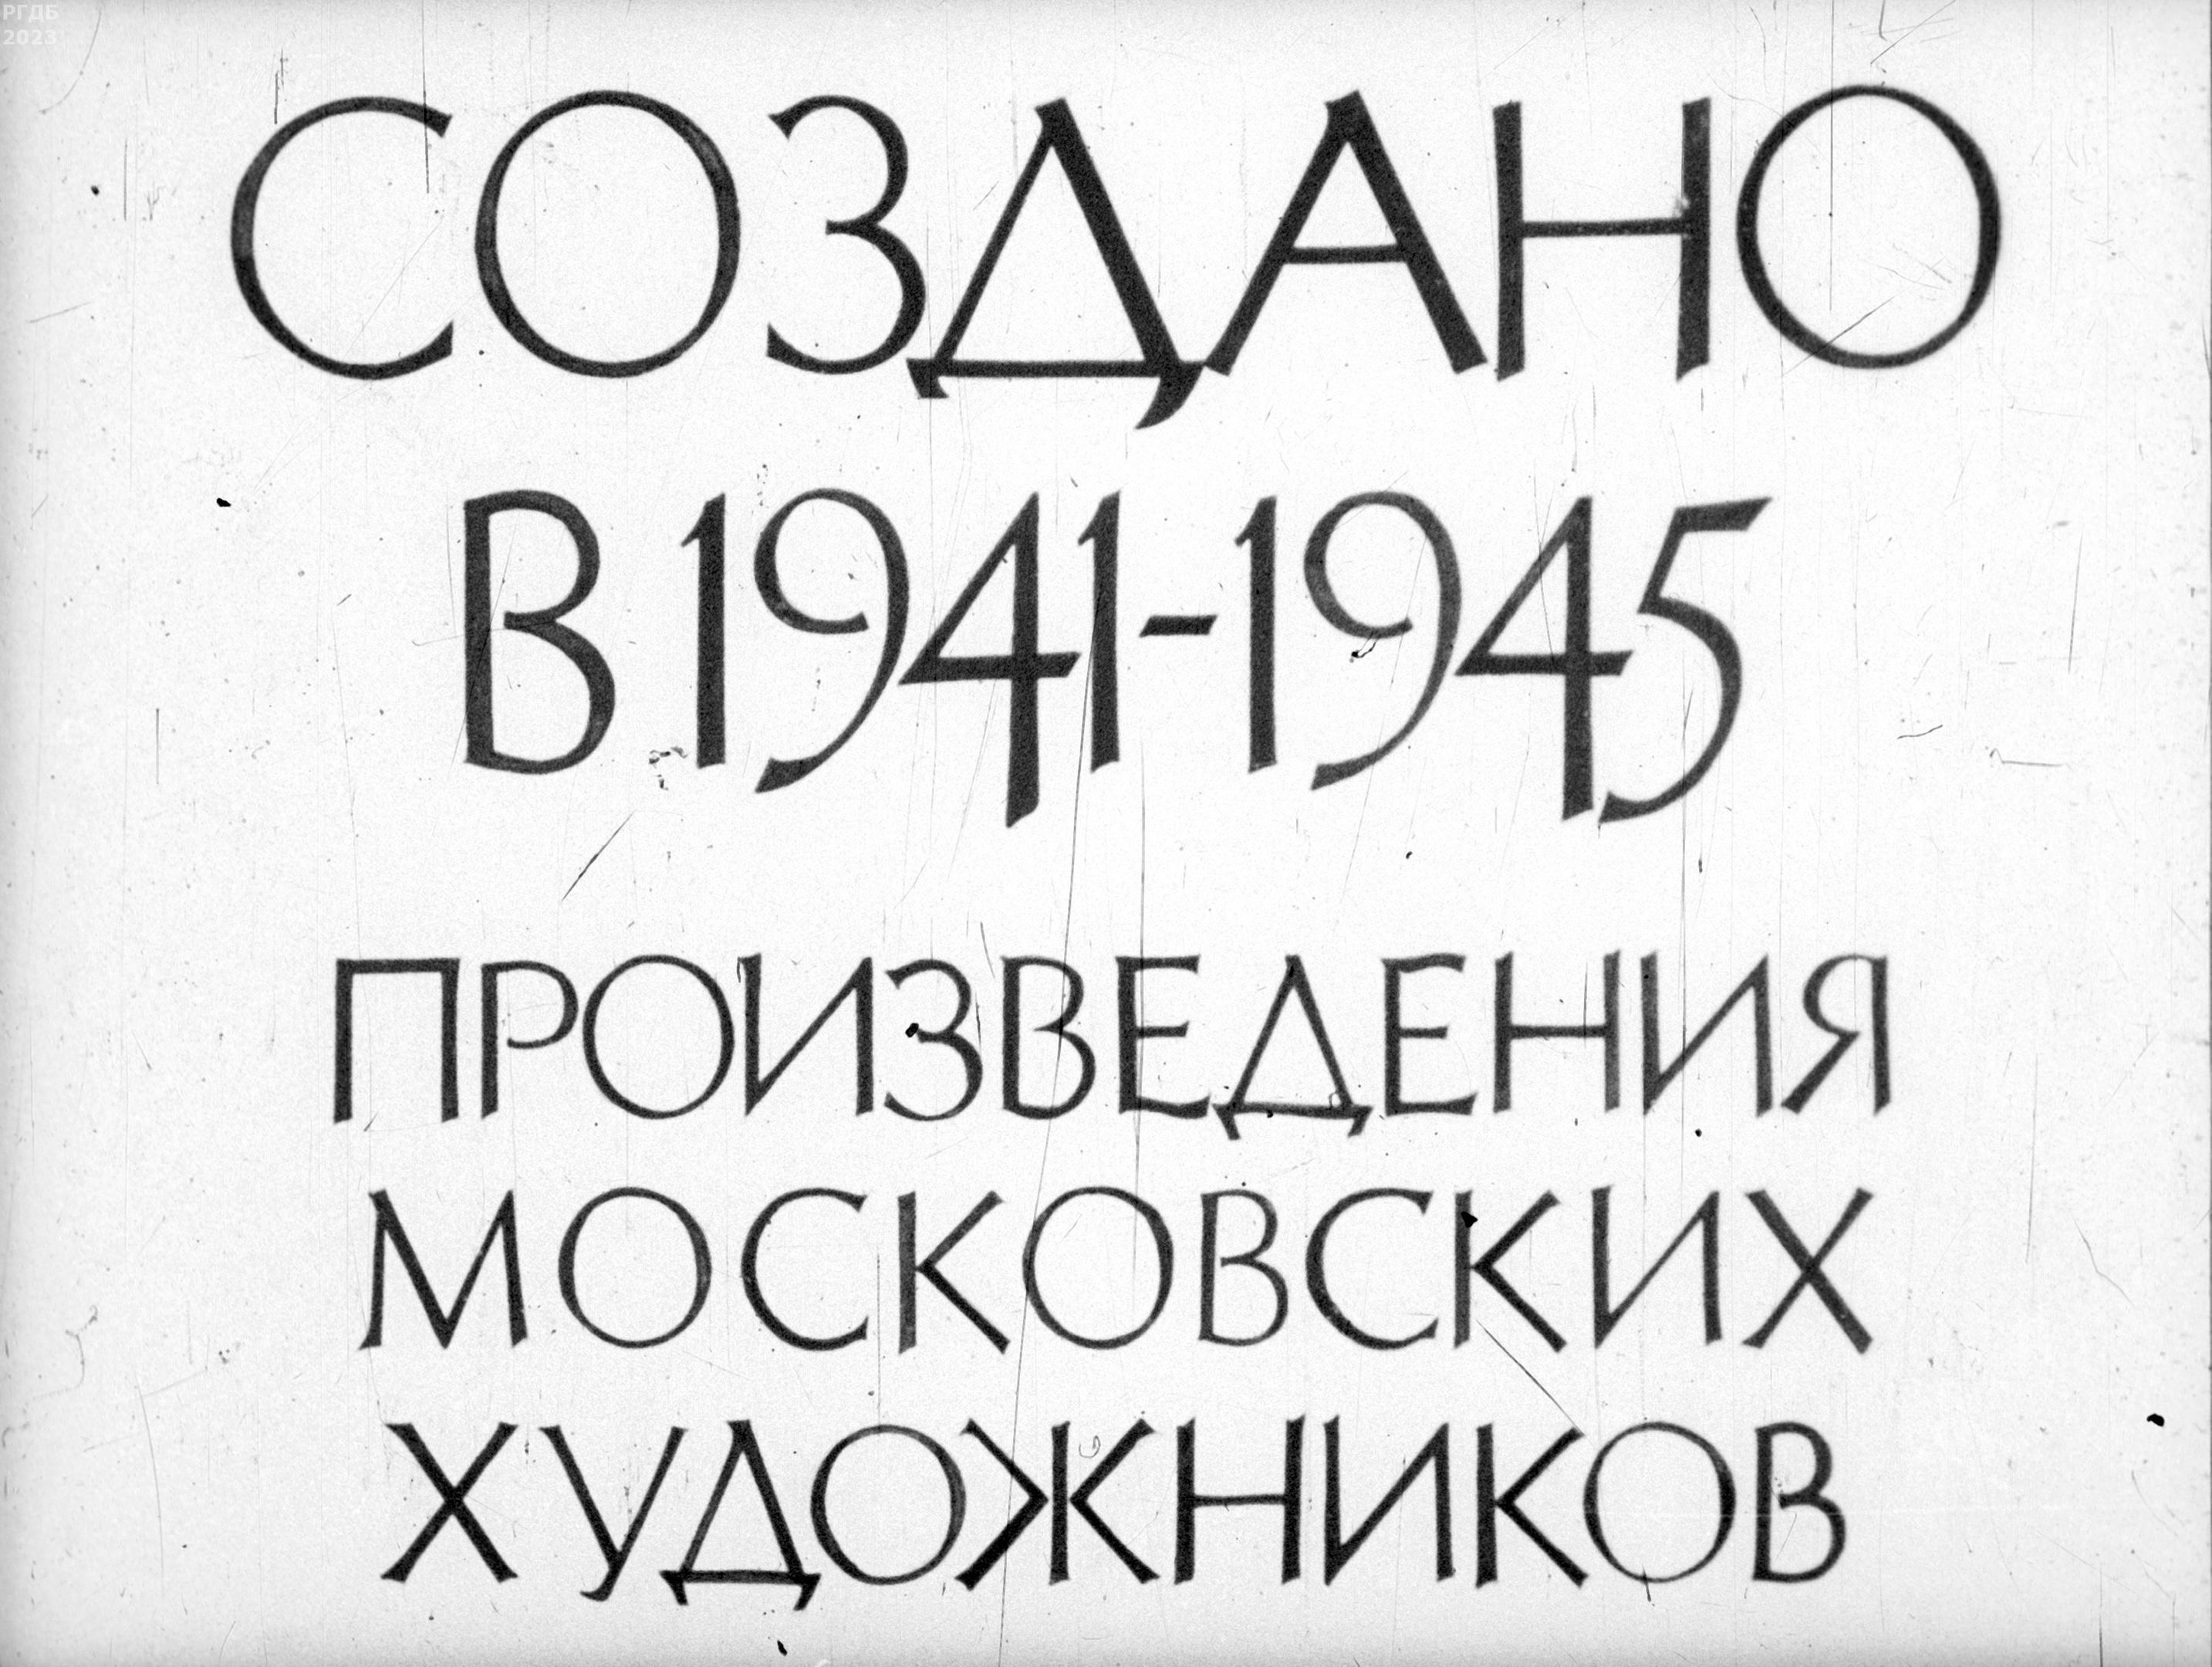 Создано в 1941-1945. Произведения московских художников